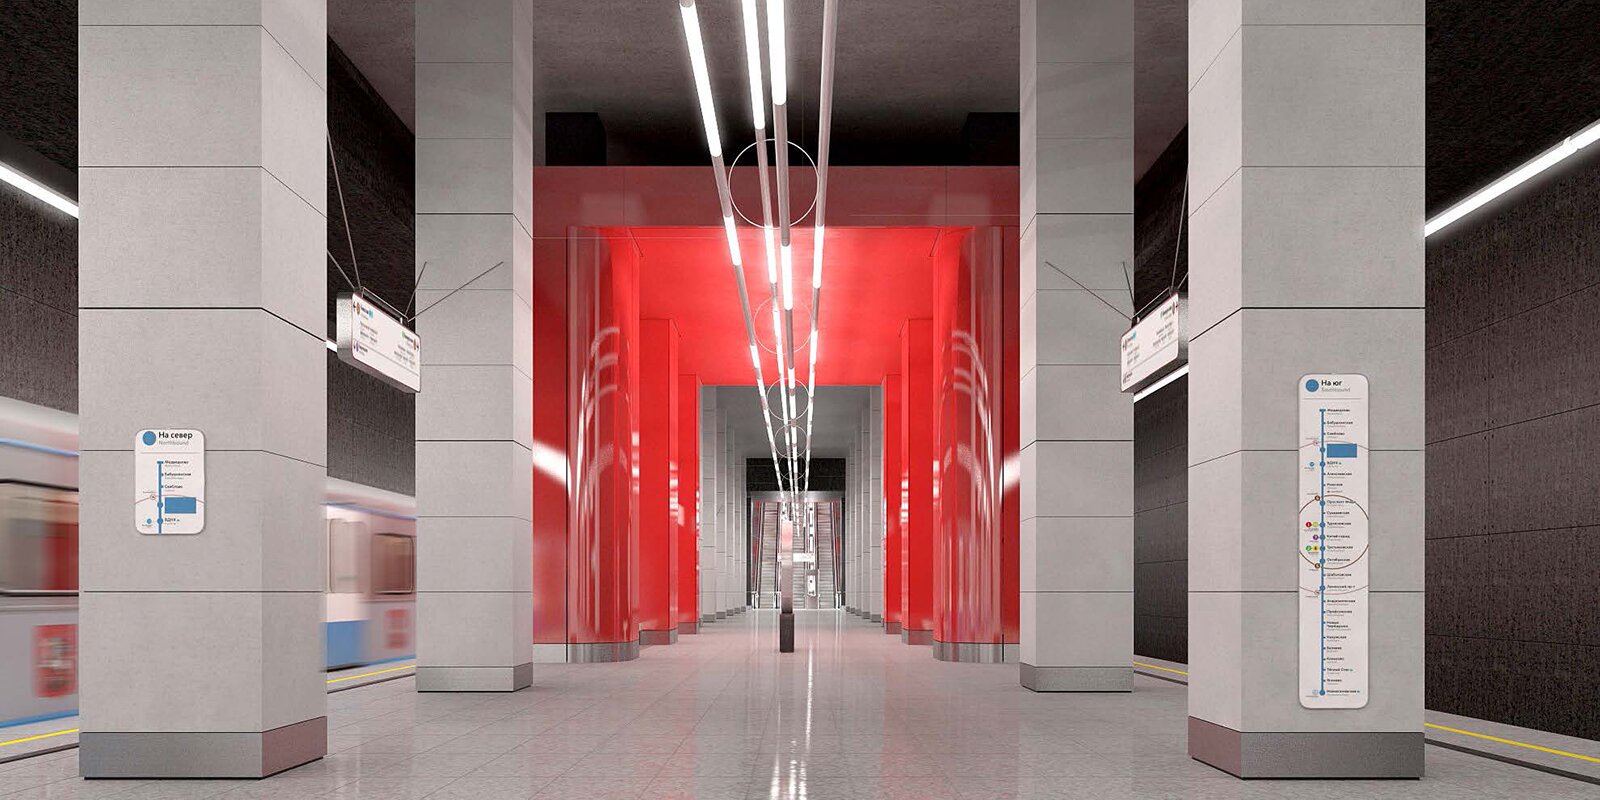 Планы на 2021 год: какие станции метро откроют в Москве